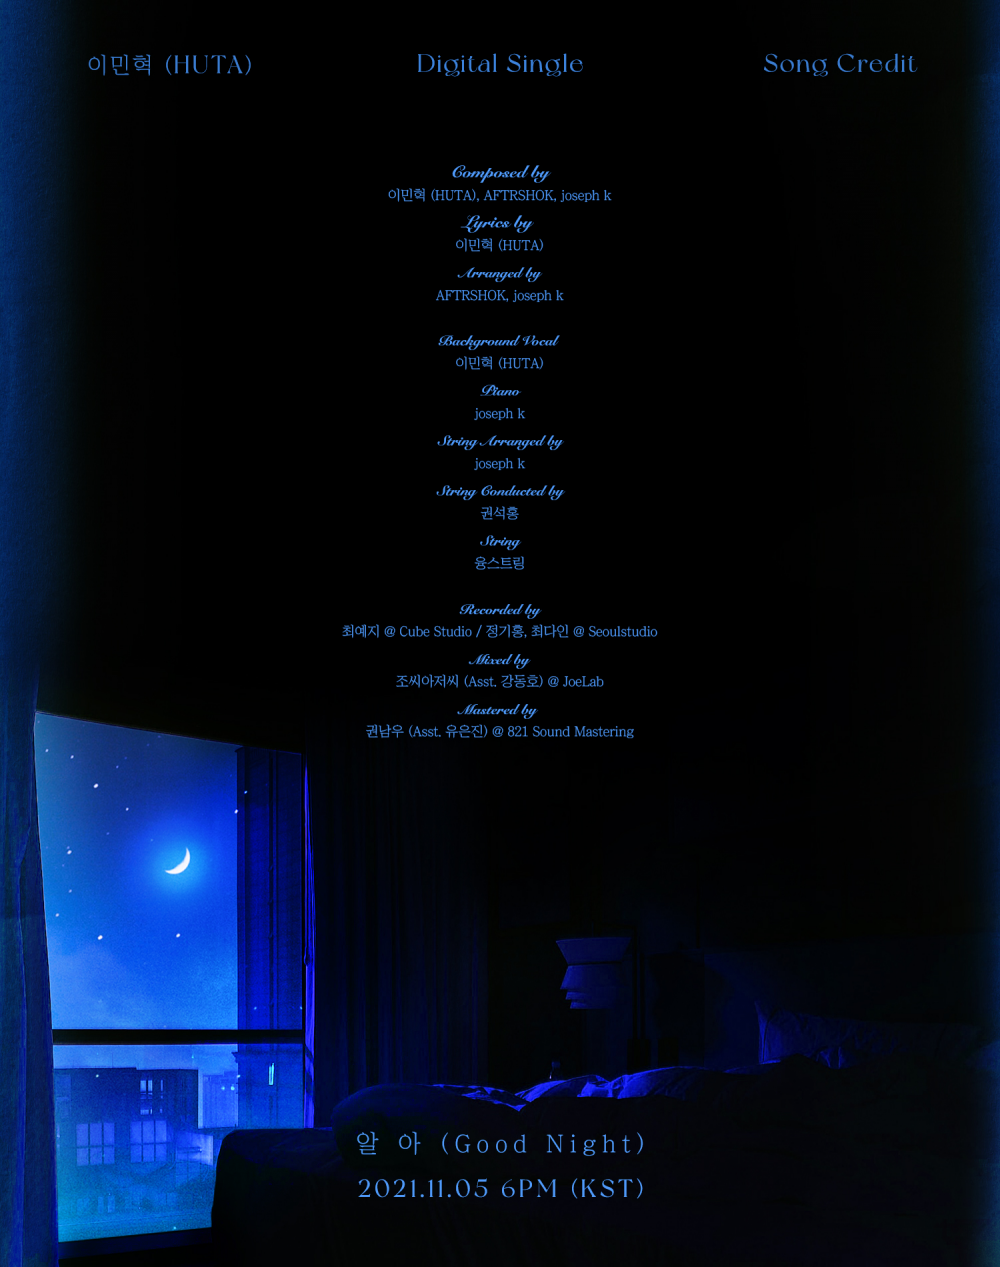 [Релиз] Минхёк из BTOB сингл «Good Night»: музыкальный клип (лирик-версия)